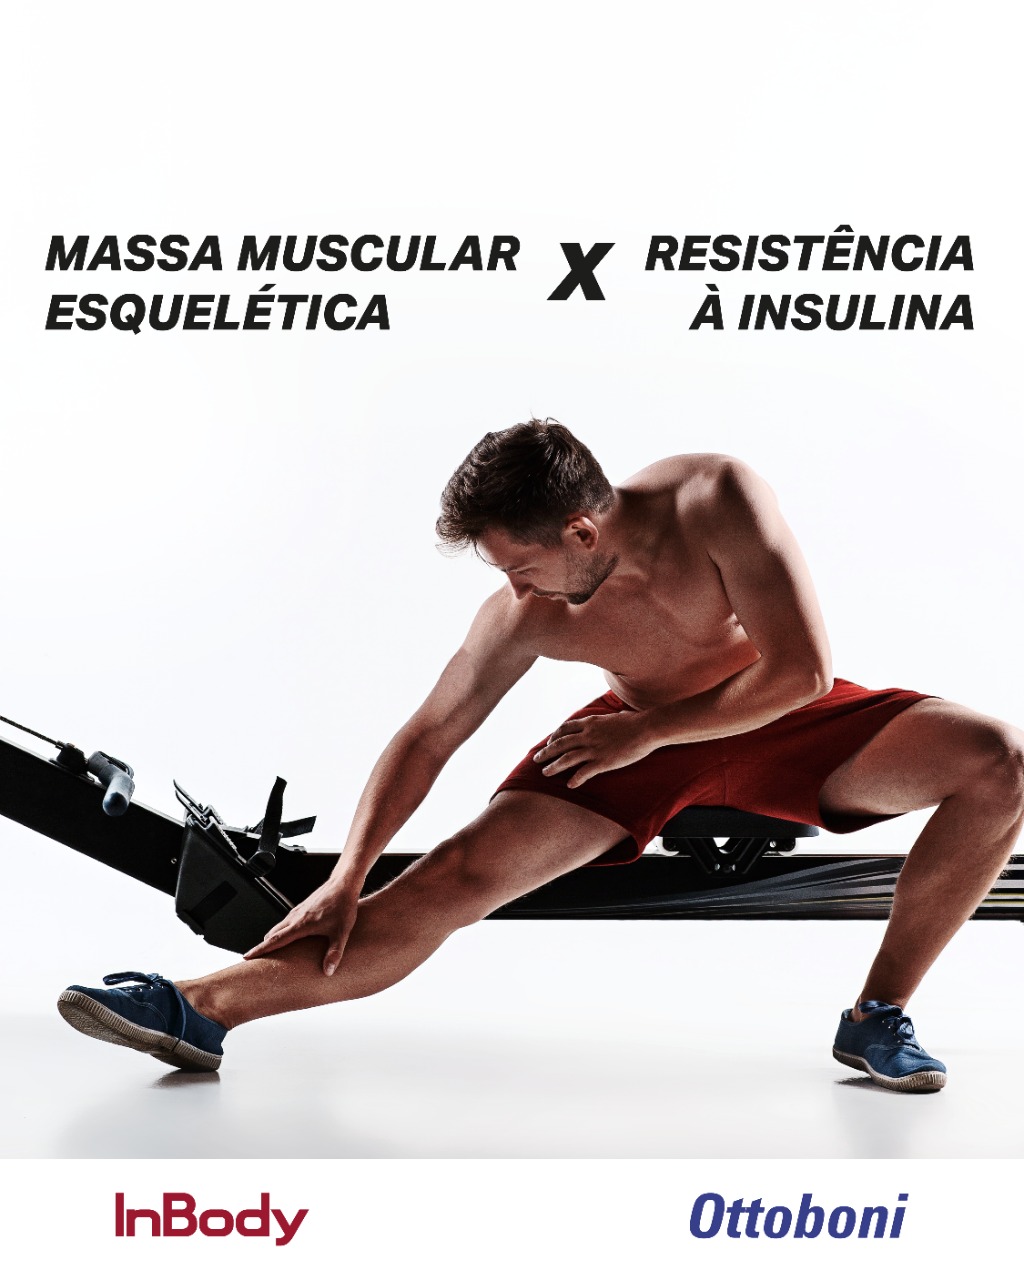 Massa muscular esquelética x resistência à insulina